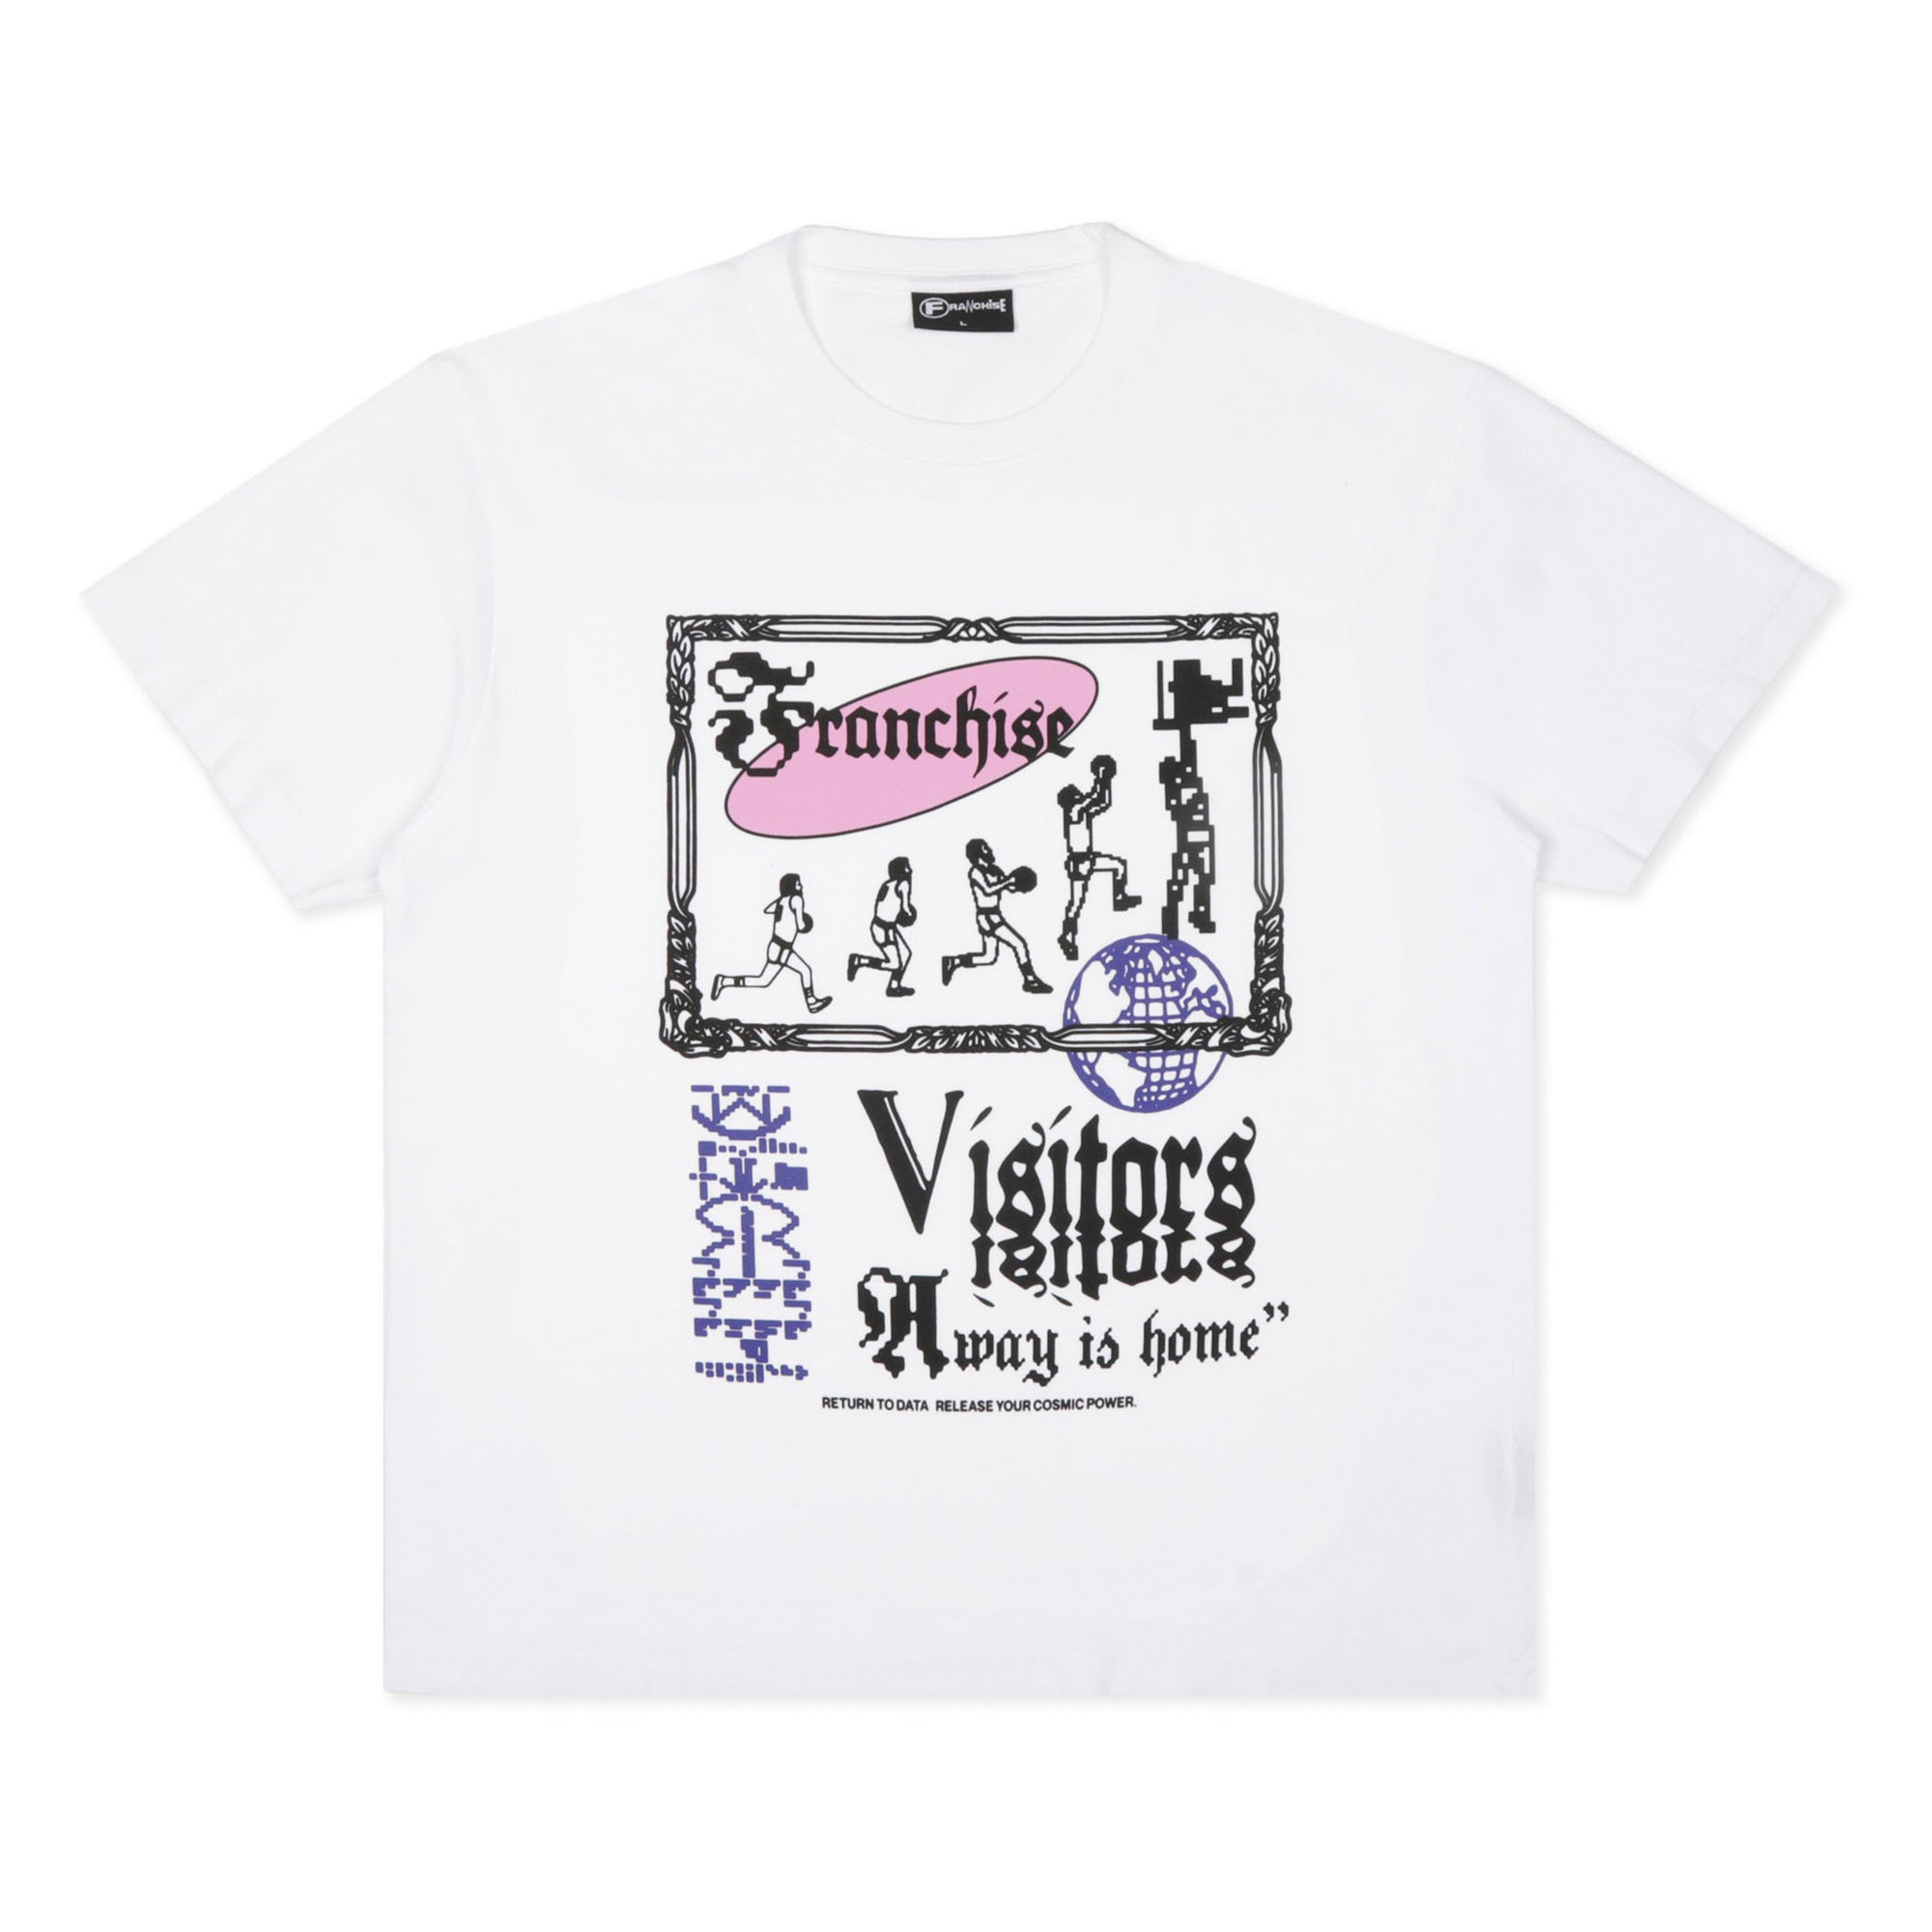 FRANCHISE - Vr Short Sleeve T-Shirt - (White) view 1